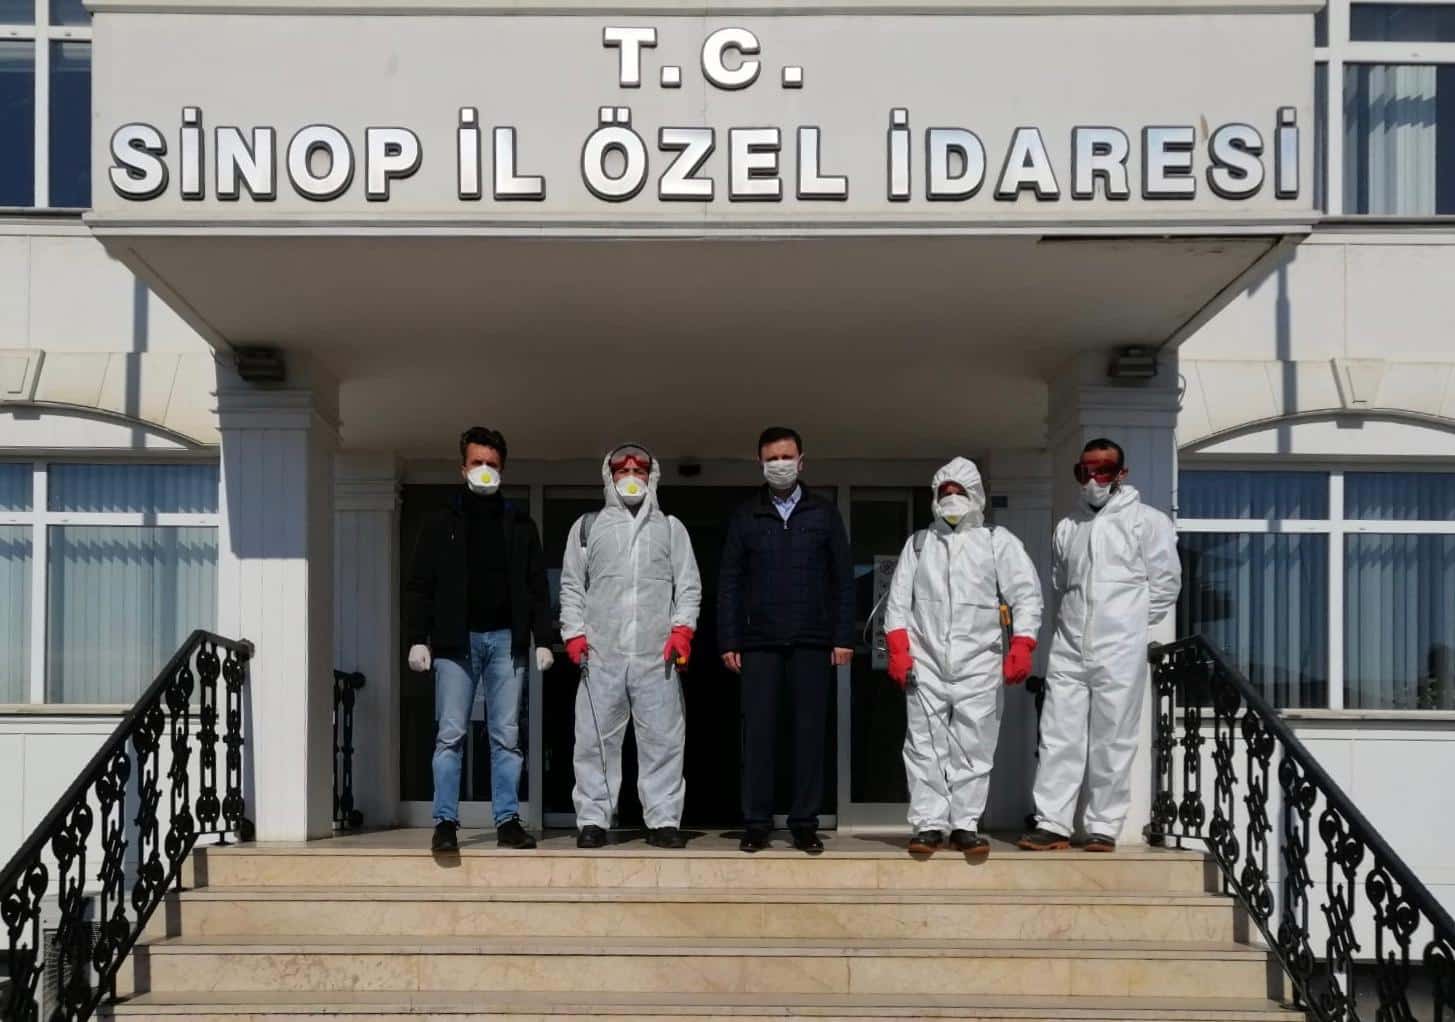 Sinop İl Özel İdaresi Covid-19 Salgınına Karşı Önlemlerini Artırdı